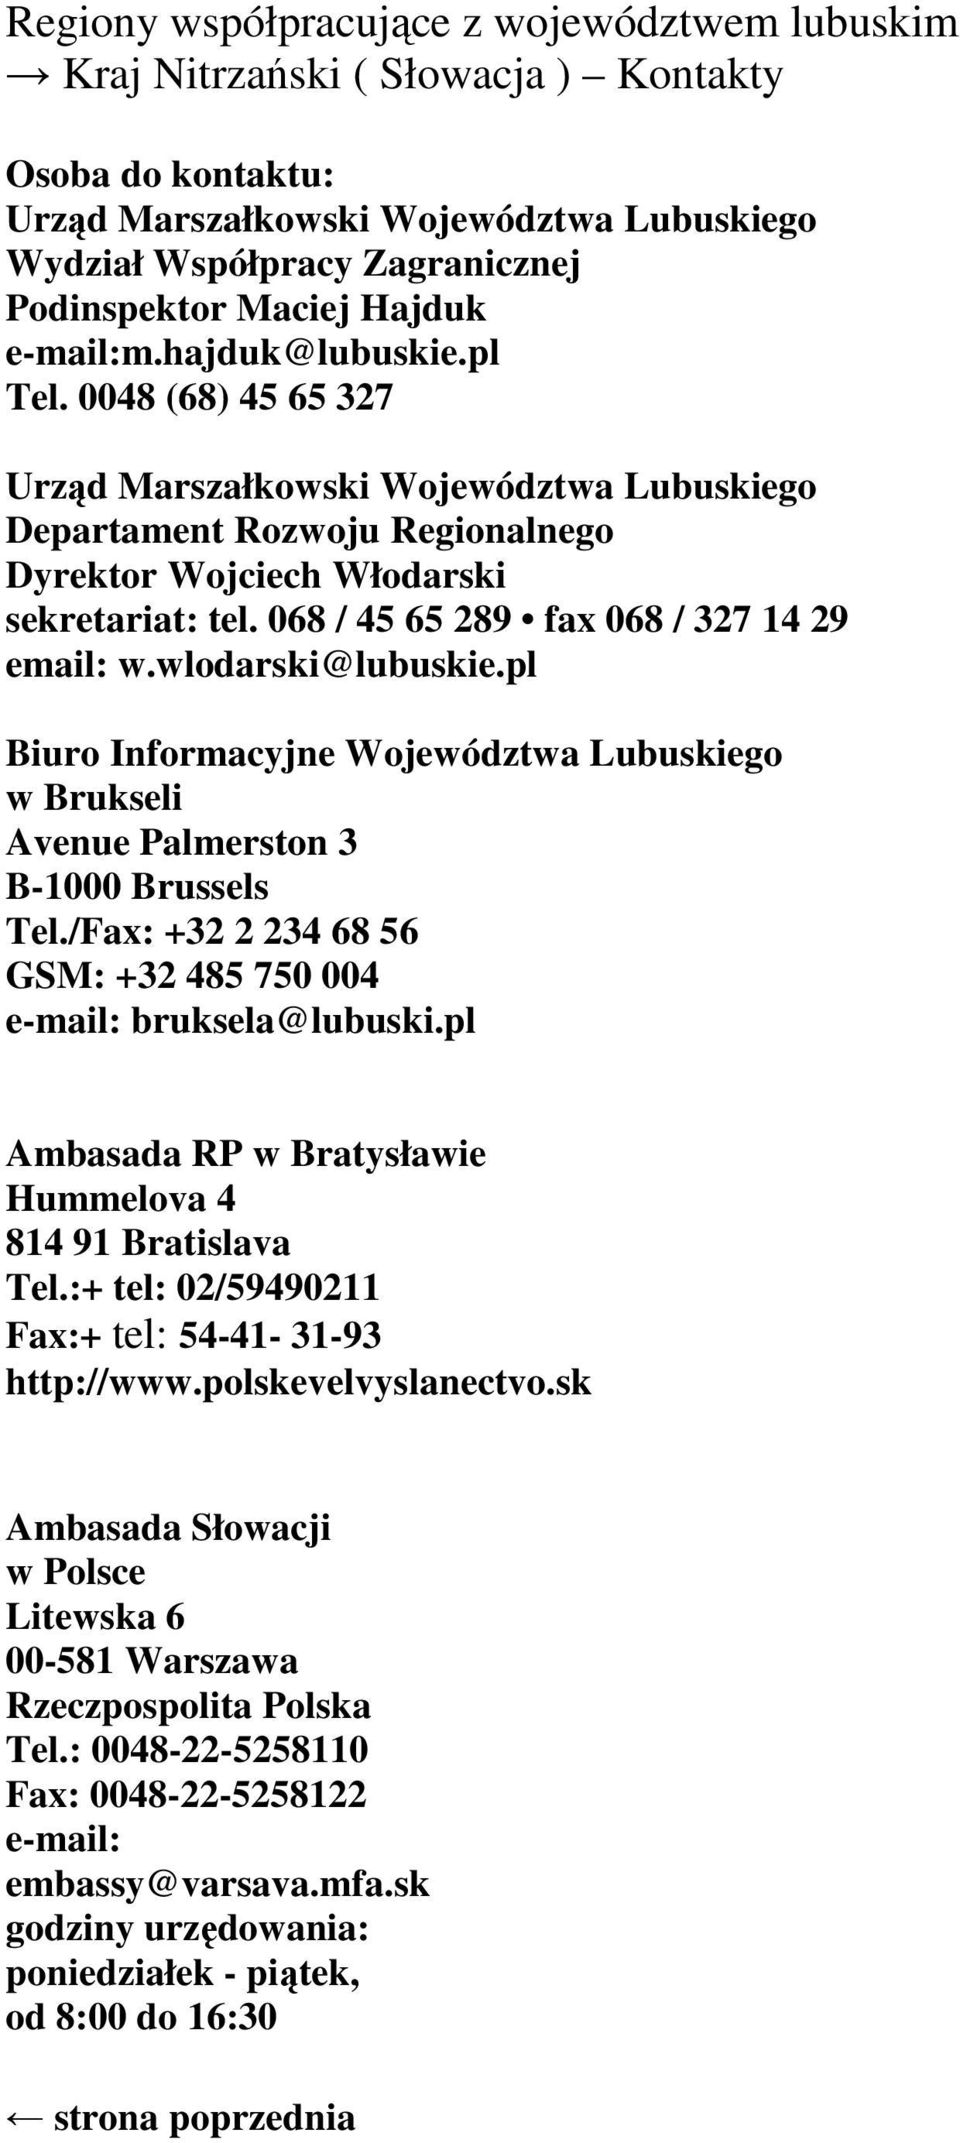 wlodarski@lubuskie.pl Biuro Informacyjne Województwa Lubuskiego w Brukseli Avenue Palmerston 3 B-1000 Brussels Tel./Fax: +32 2 234 68 56 GSM: +32 485 750 004 e-mail: bruksela@lubuski.